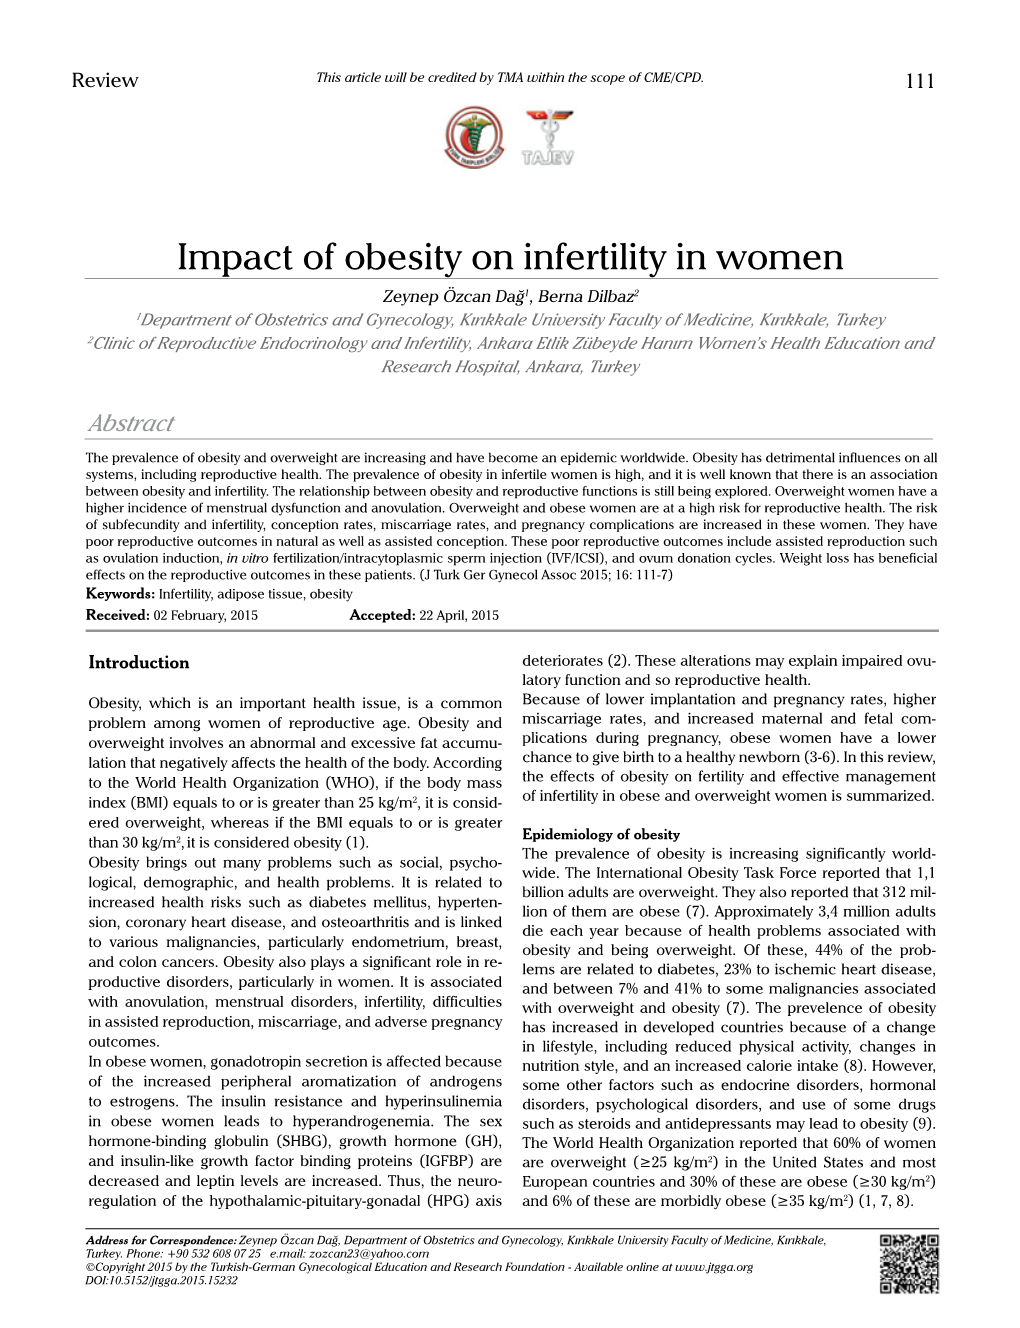 Impact of Obesity on Infertility in Women